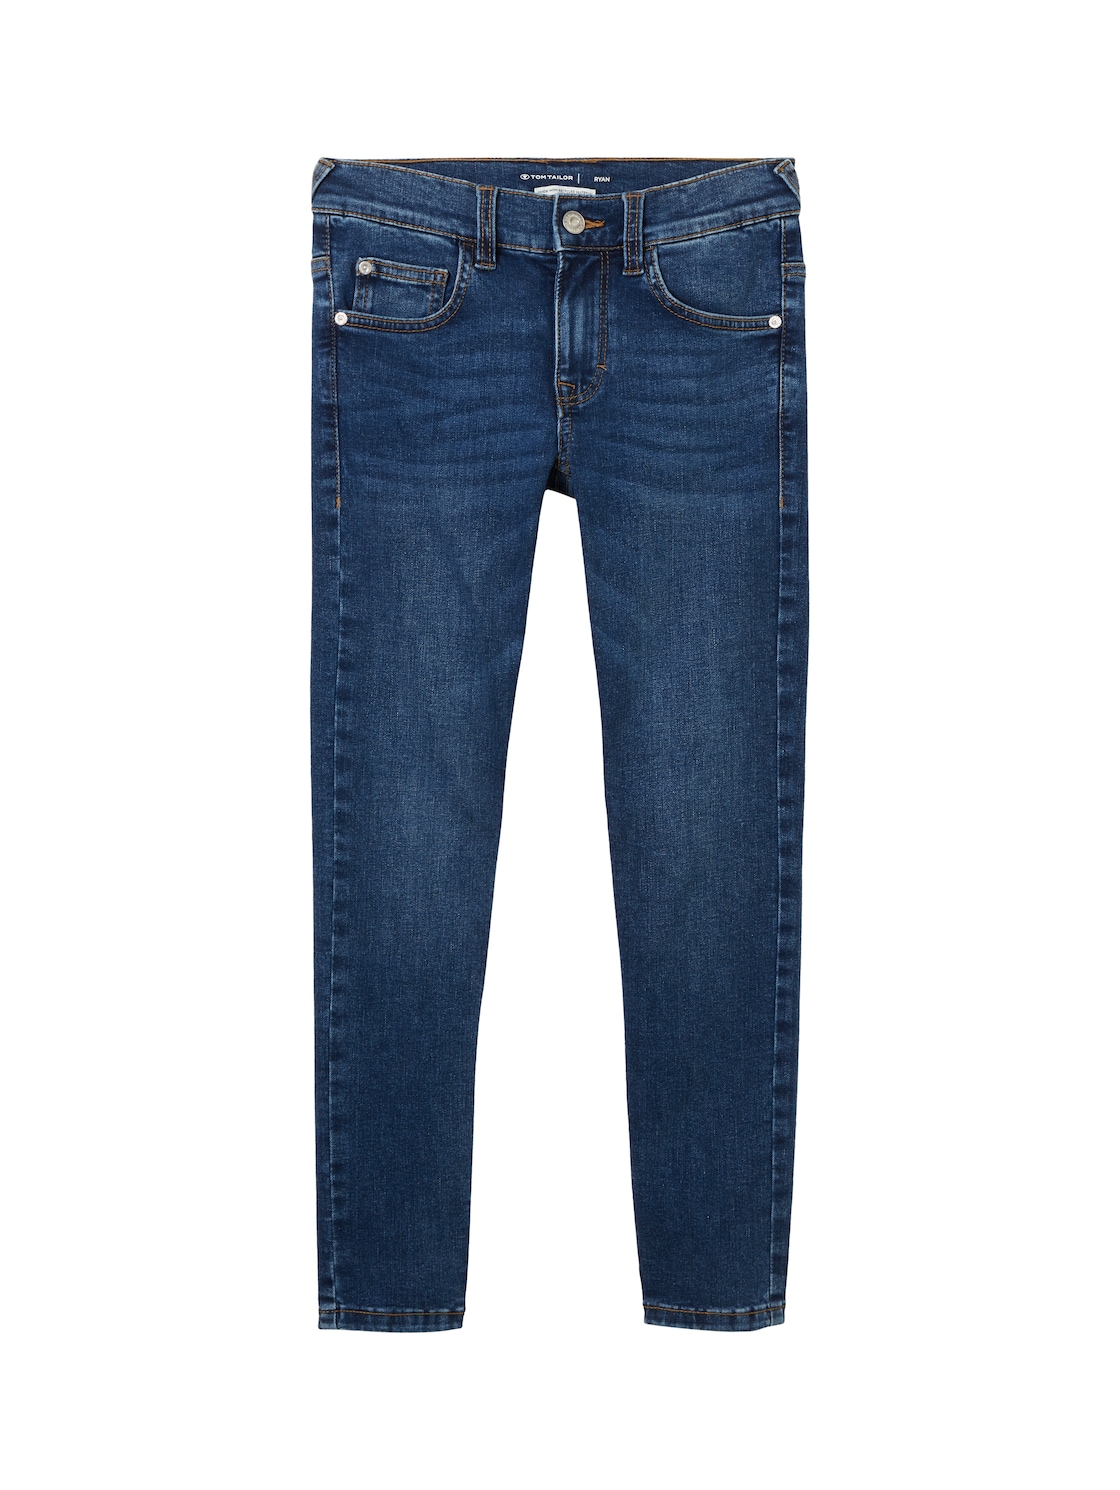 TOM TAILOR Jungen Ryan Jeans mit recycelter Baumwolle, blau, Uni, Gr. 158 von Tom Tailor